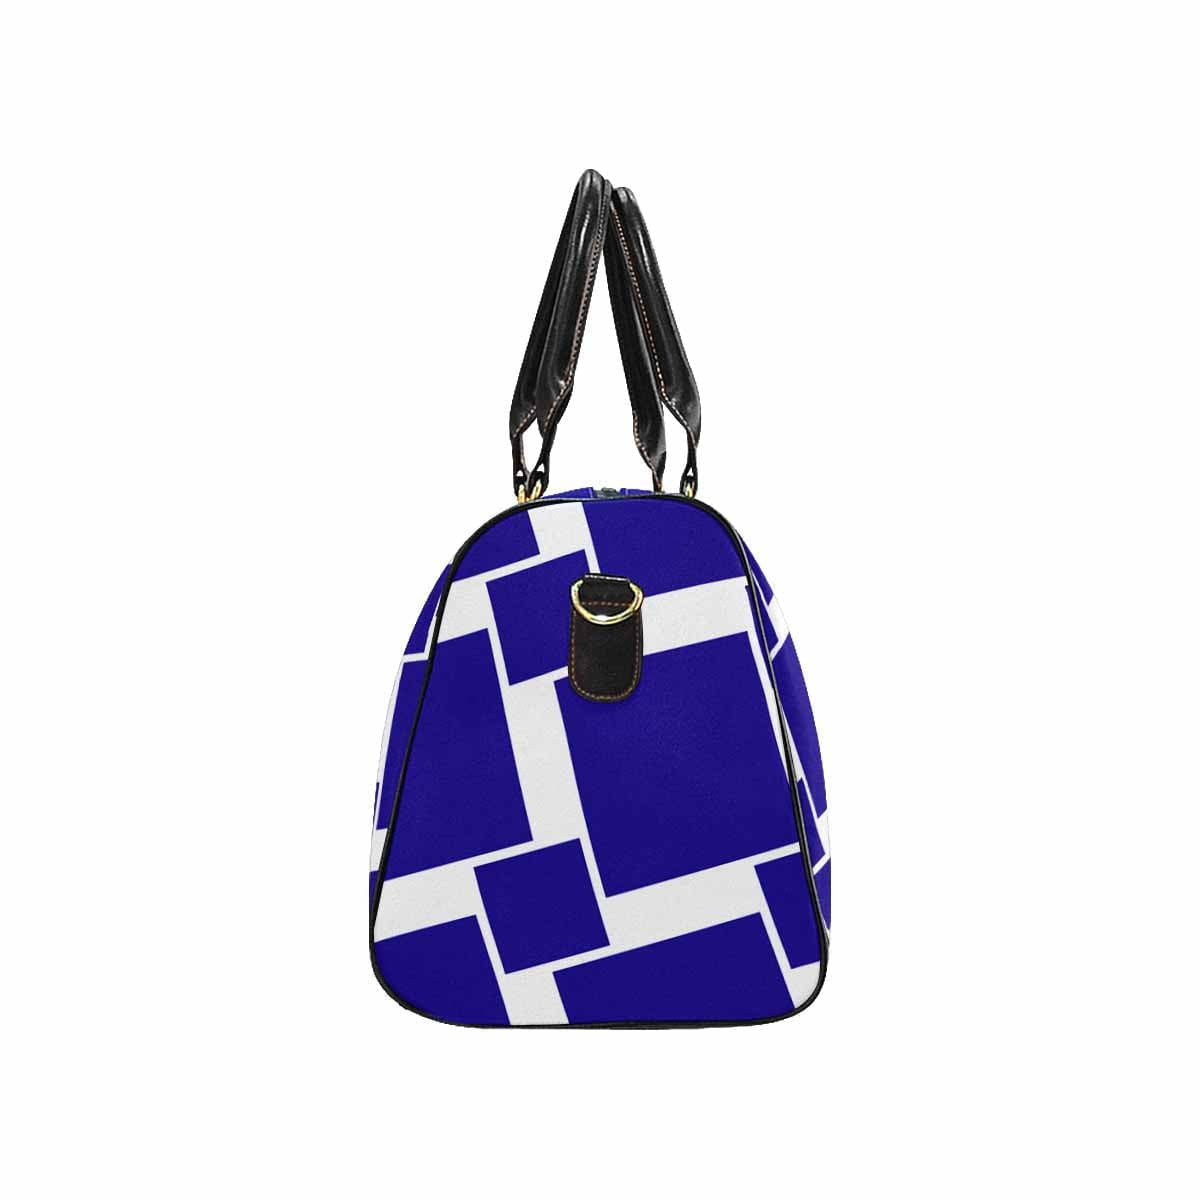 Travel Bag Adjustable Shoulder Strap Carry On Bag Indigo Purple - Bags | Travel